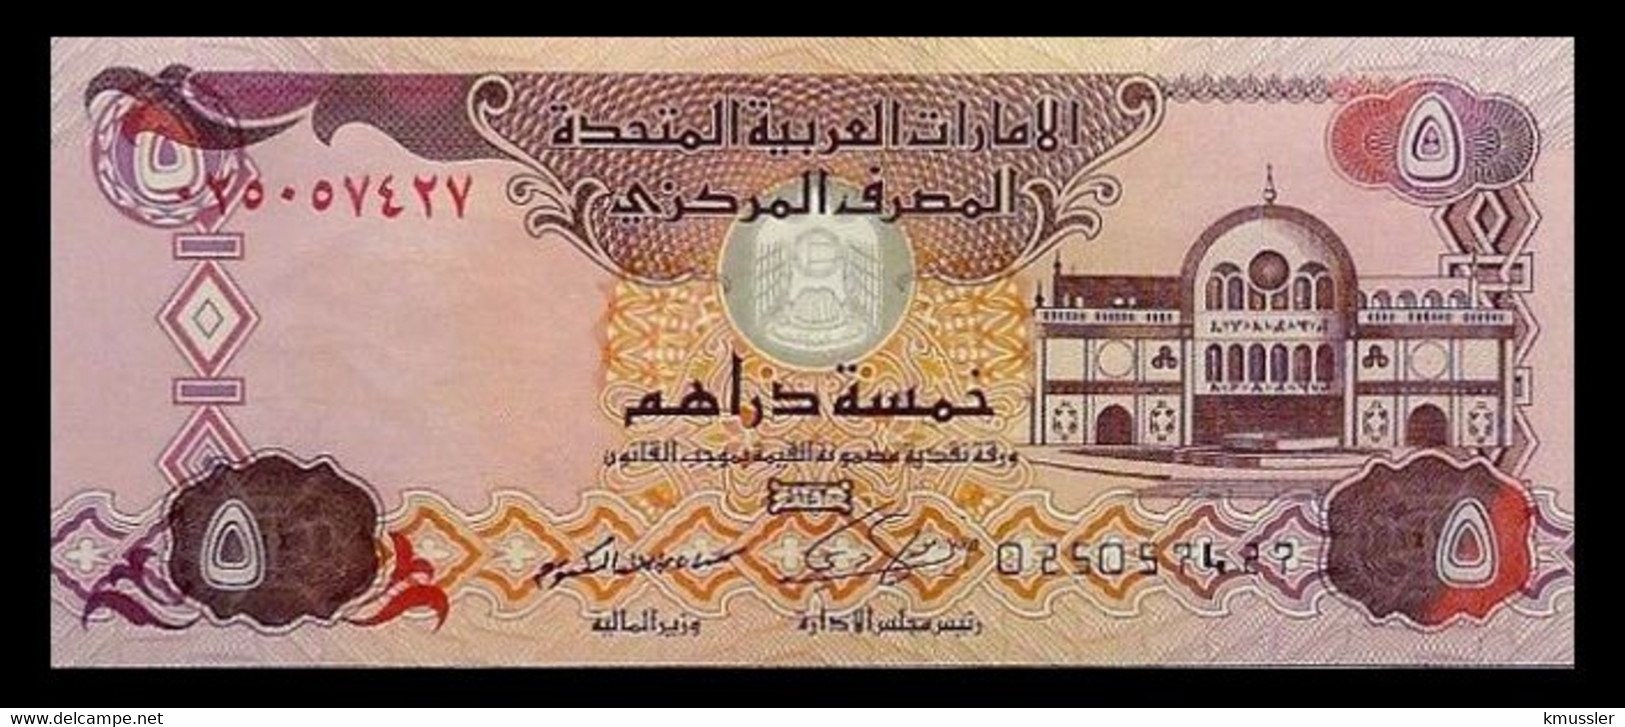 # # # Banknote Aus Den Vereinigten Emiraten (VAE) 5 Dirhams 2014 UNC # # # - Emiratos Arabes Unidos